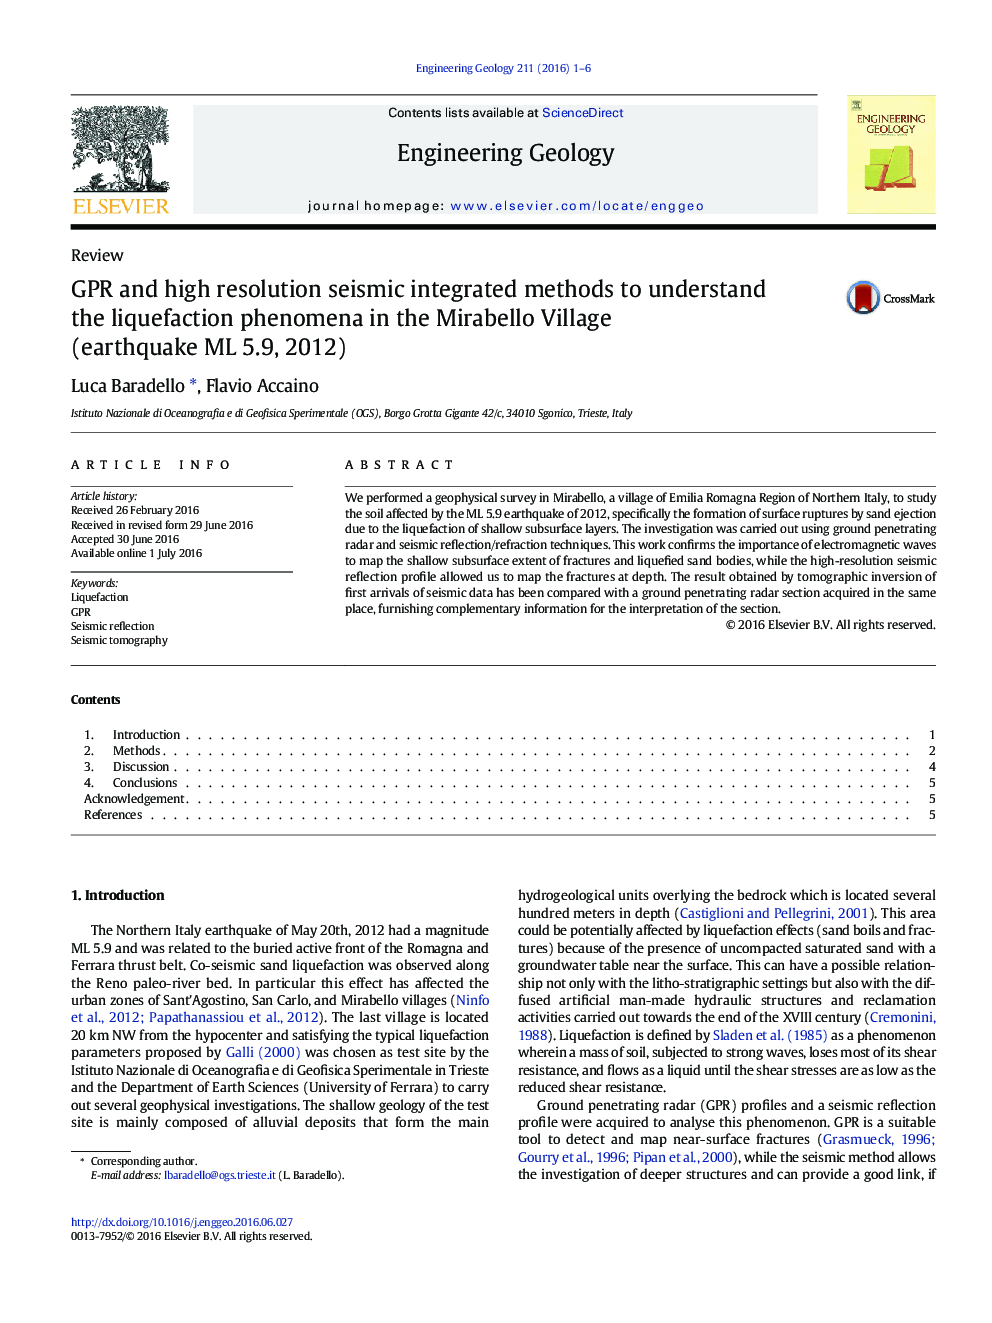 GPR و روشهای یکپارچه لرزه ای با وضوح بالا برای درک پدیده های مایع سازی در روستای میرابلو (زمین لرزه ML 5.9، 2012)